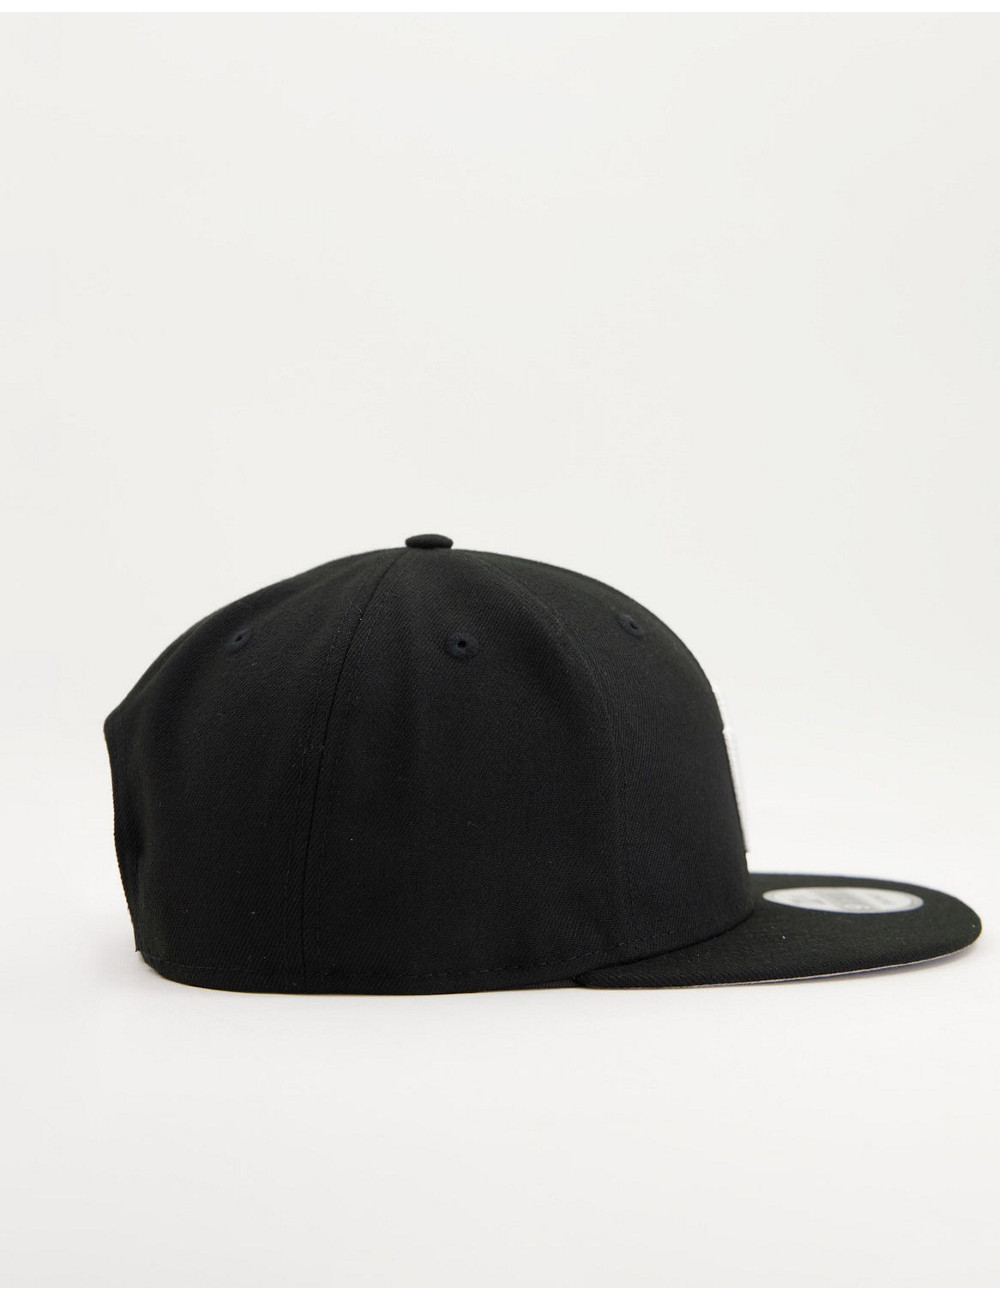 New Era 950 cap in black